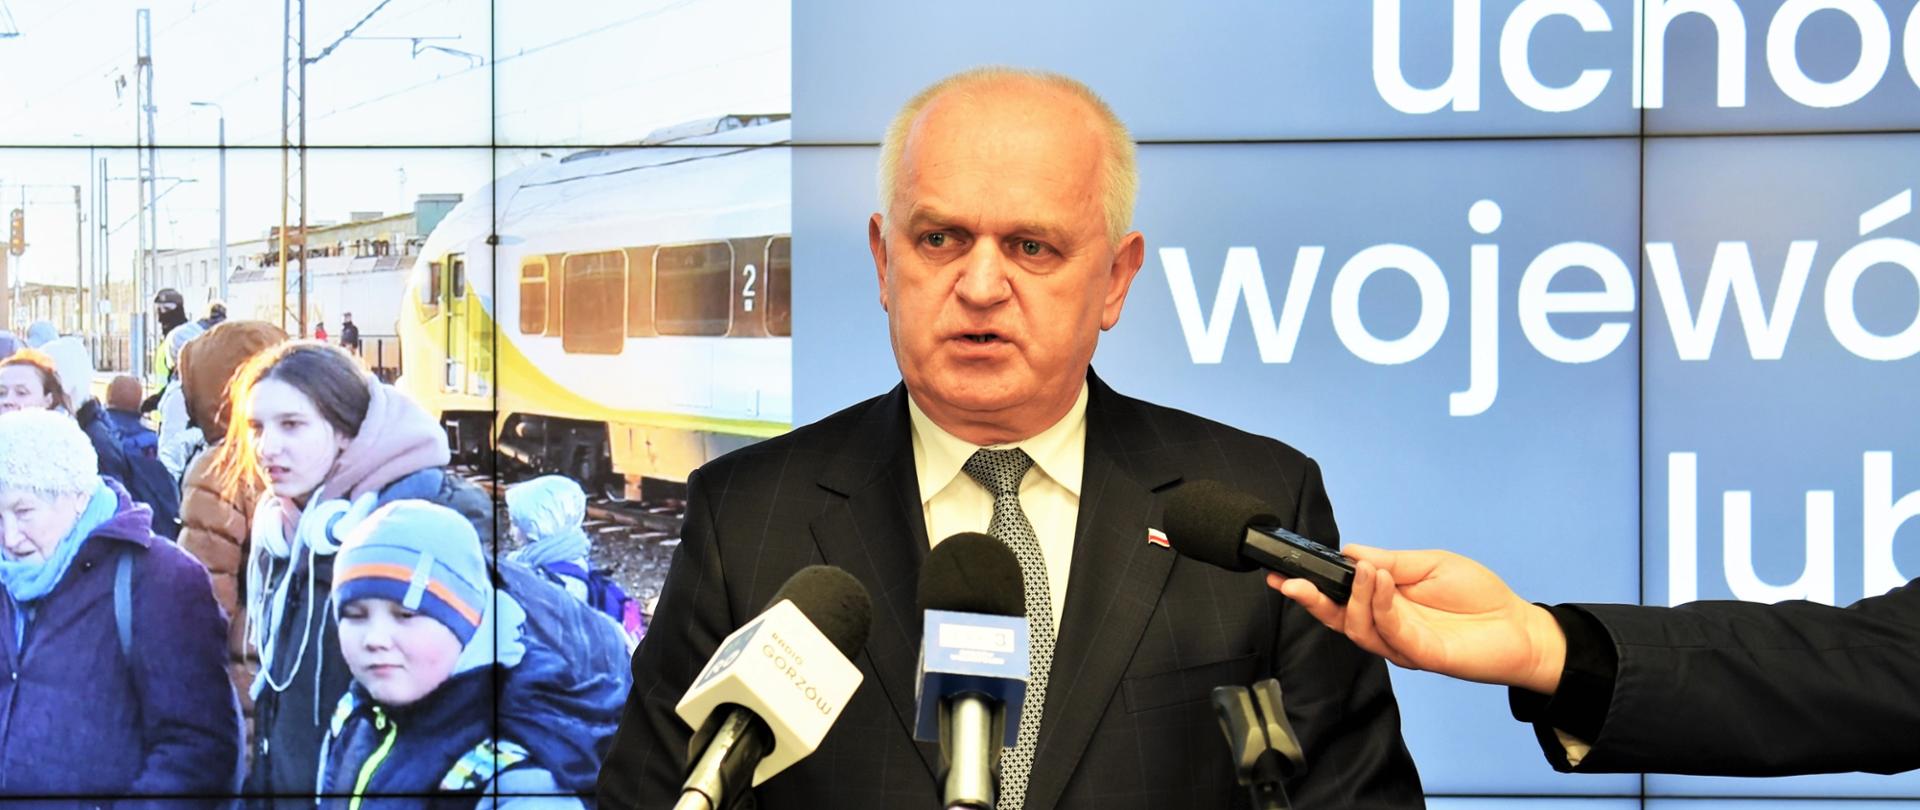 Wojewoda Władsław Dajczak w czasie briefingu przemawia przy mównicy, za plecami ma ekran z prezentacją